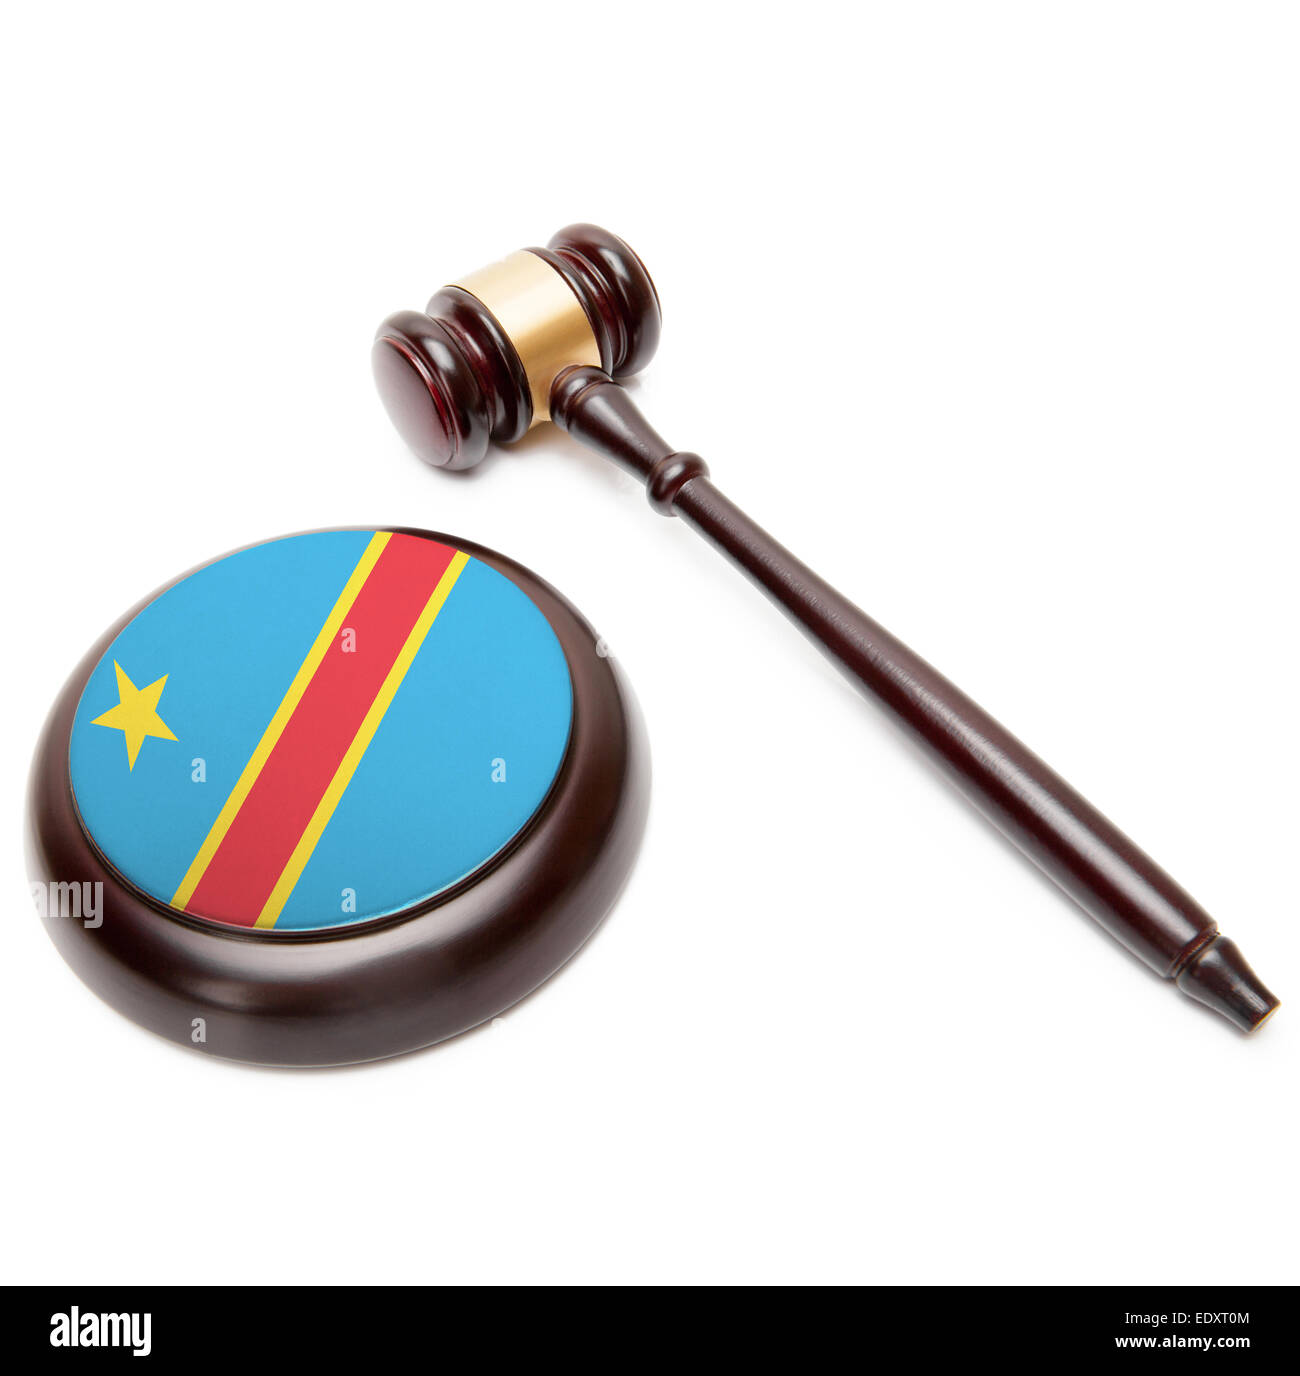 Hammer und Resonanzboden mit Nationalflagge drauf - demokratische Republik Kongo - Kongo-Kinshasa zu beurteilen. Stockfoto